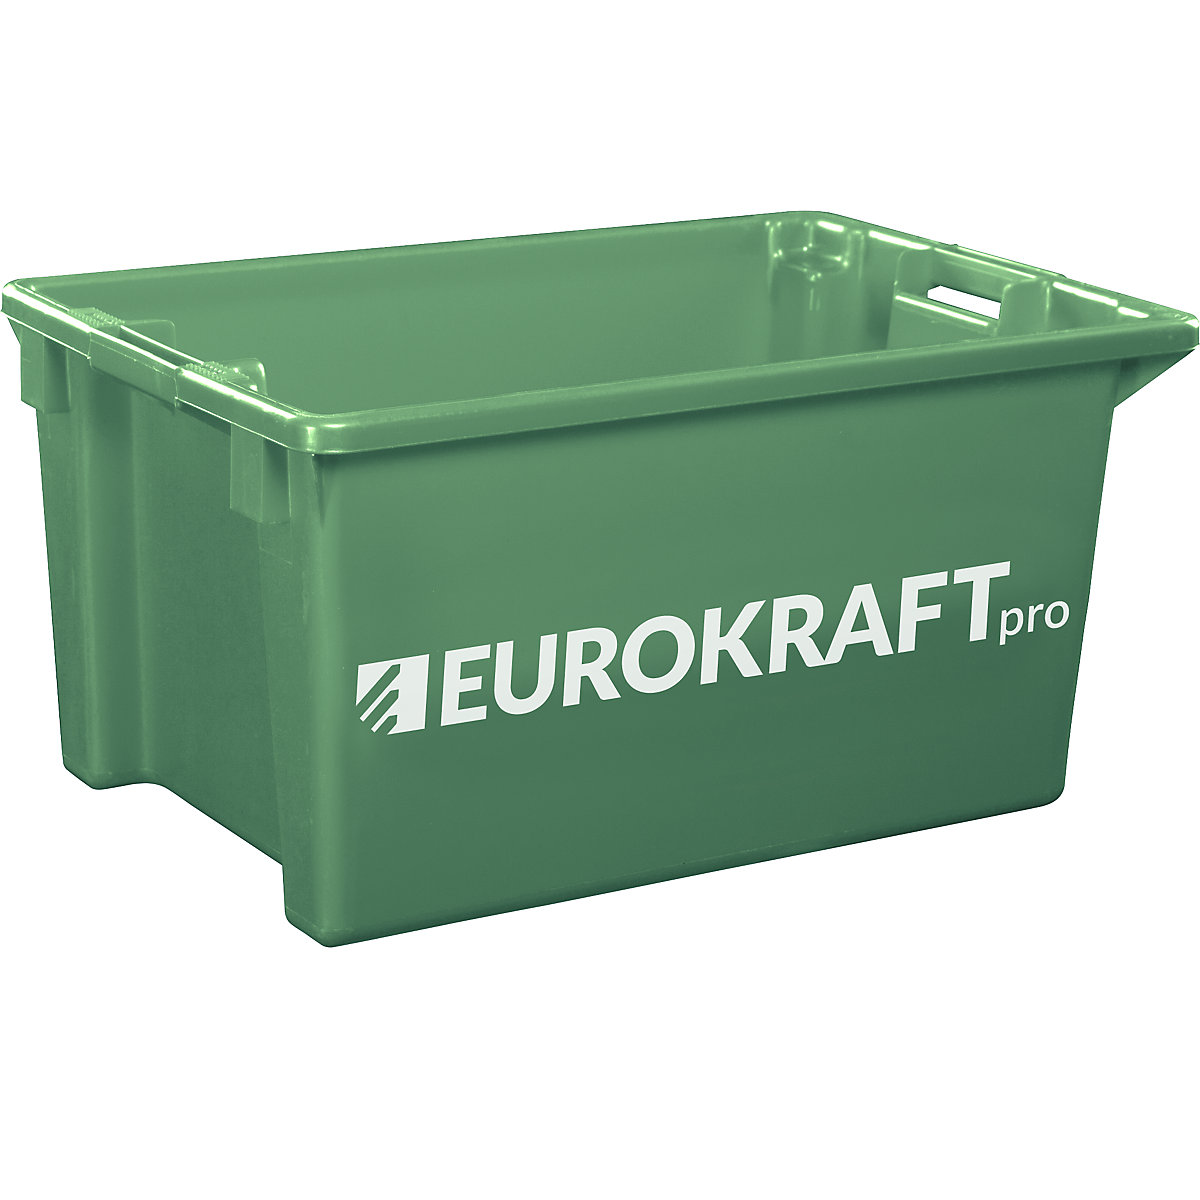 Drehstapelbehälter aus lebensmittelechtem Polypropylen eurokraft pro, Inhalt 70 Liter, VE 2 Stk, Wände und Boden geschlossen, grün